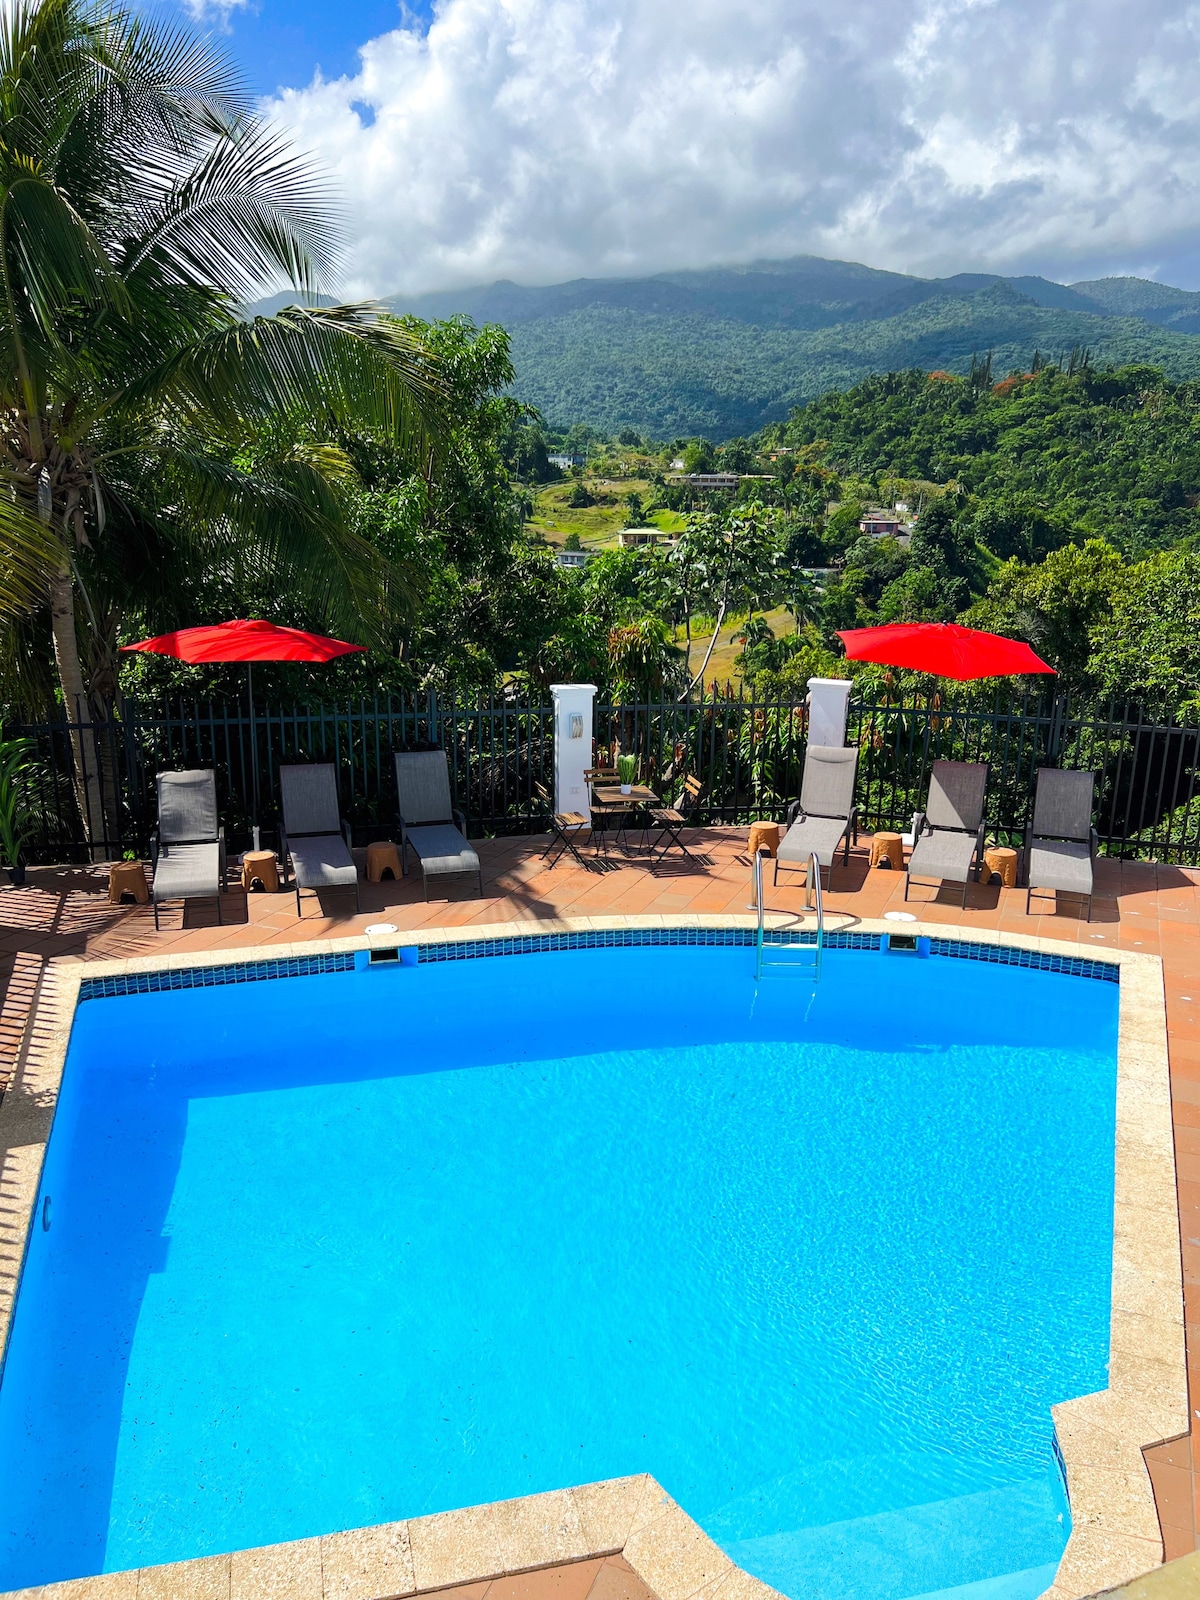 大型团体、游泳池、El Yunque景观，可享七折优惠